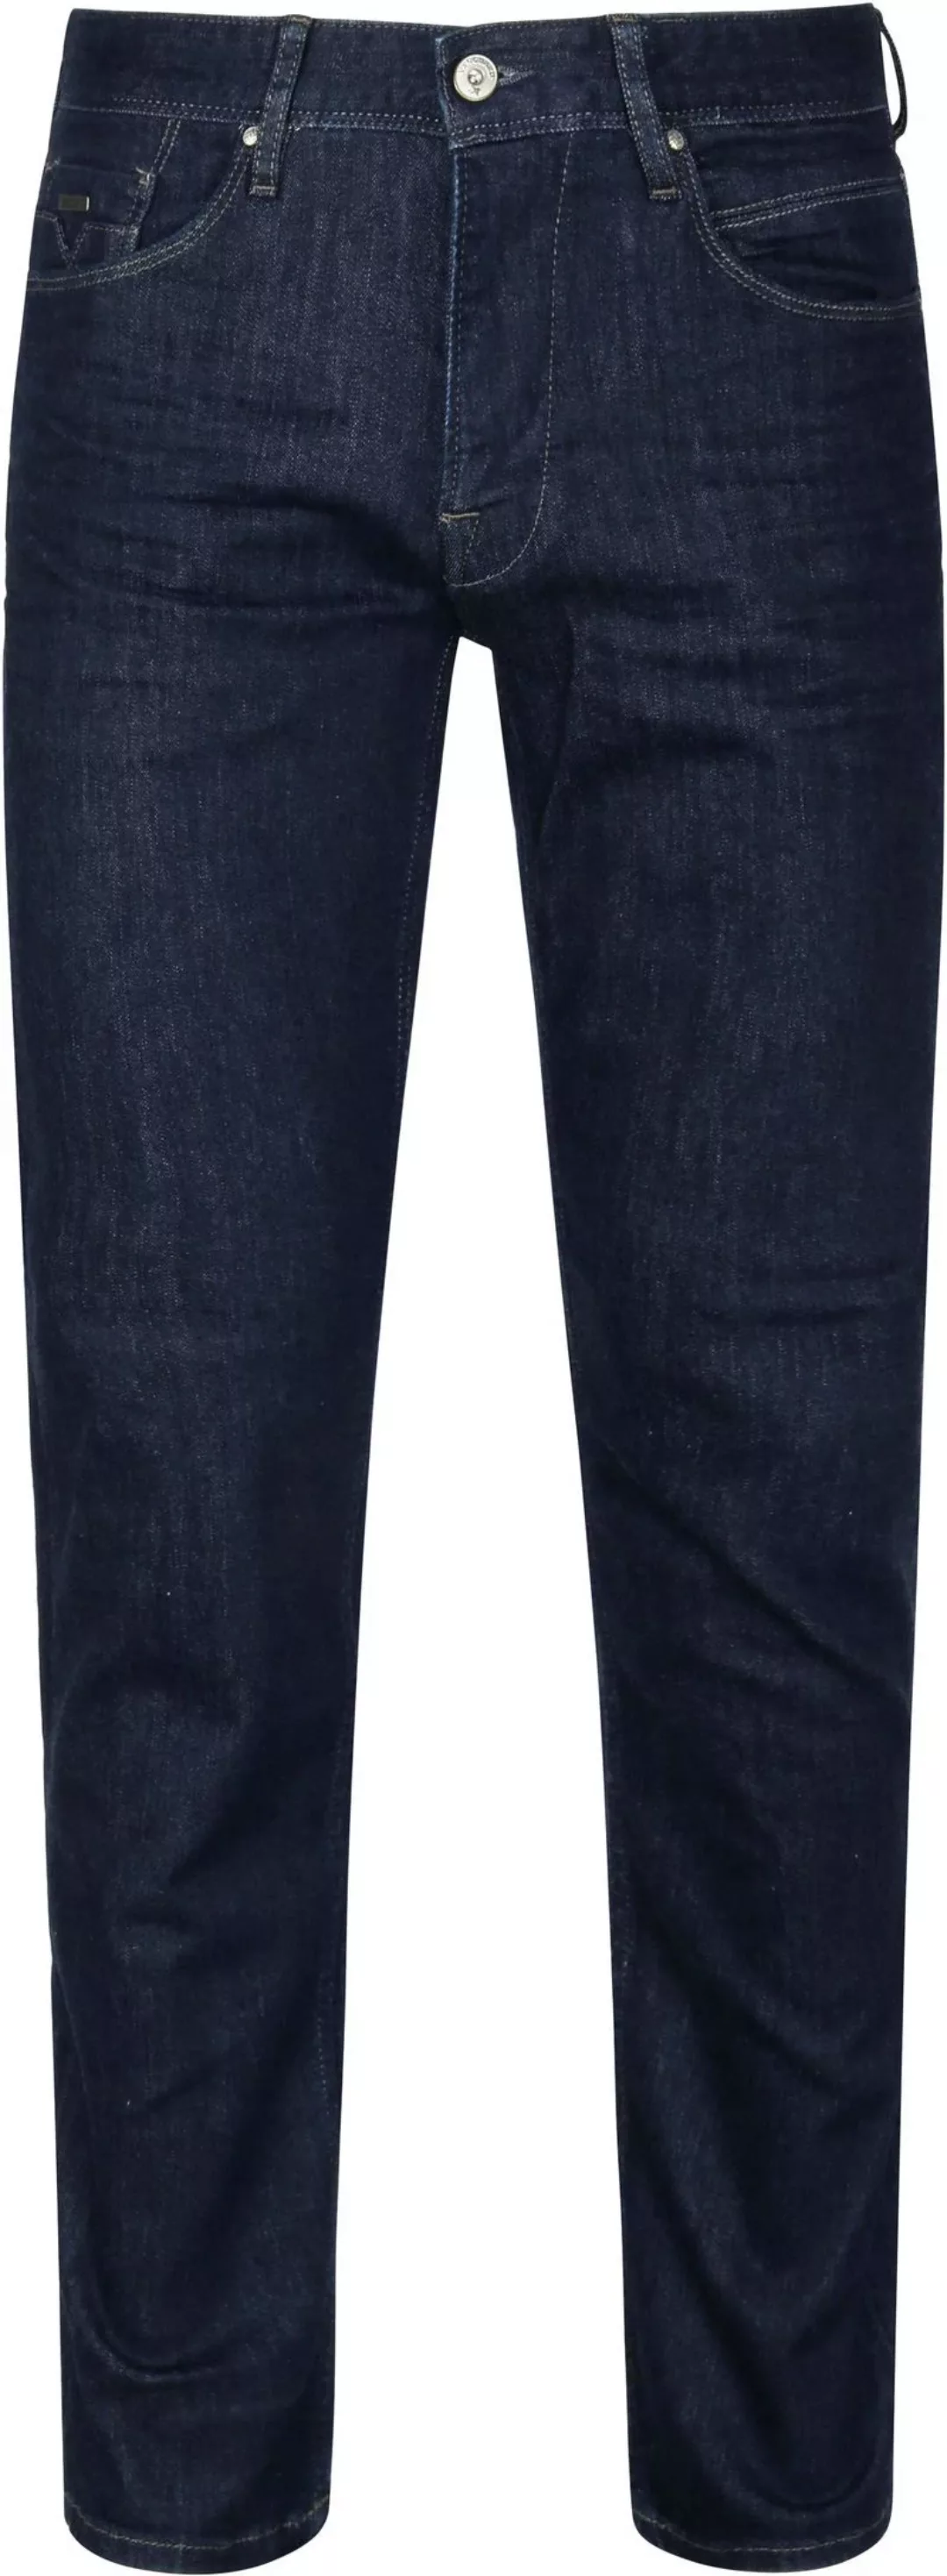 Vanguard Jeans V7 Rider Dunkelblau - Größe W 38 - L 36 günstig online kaufen